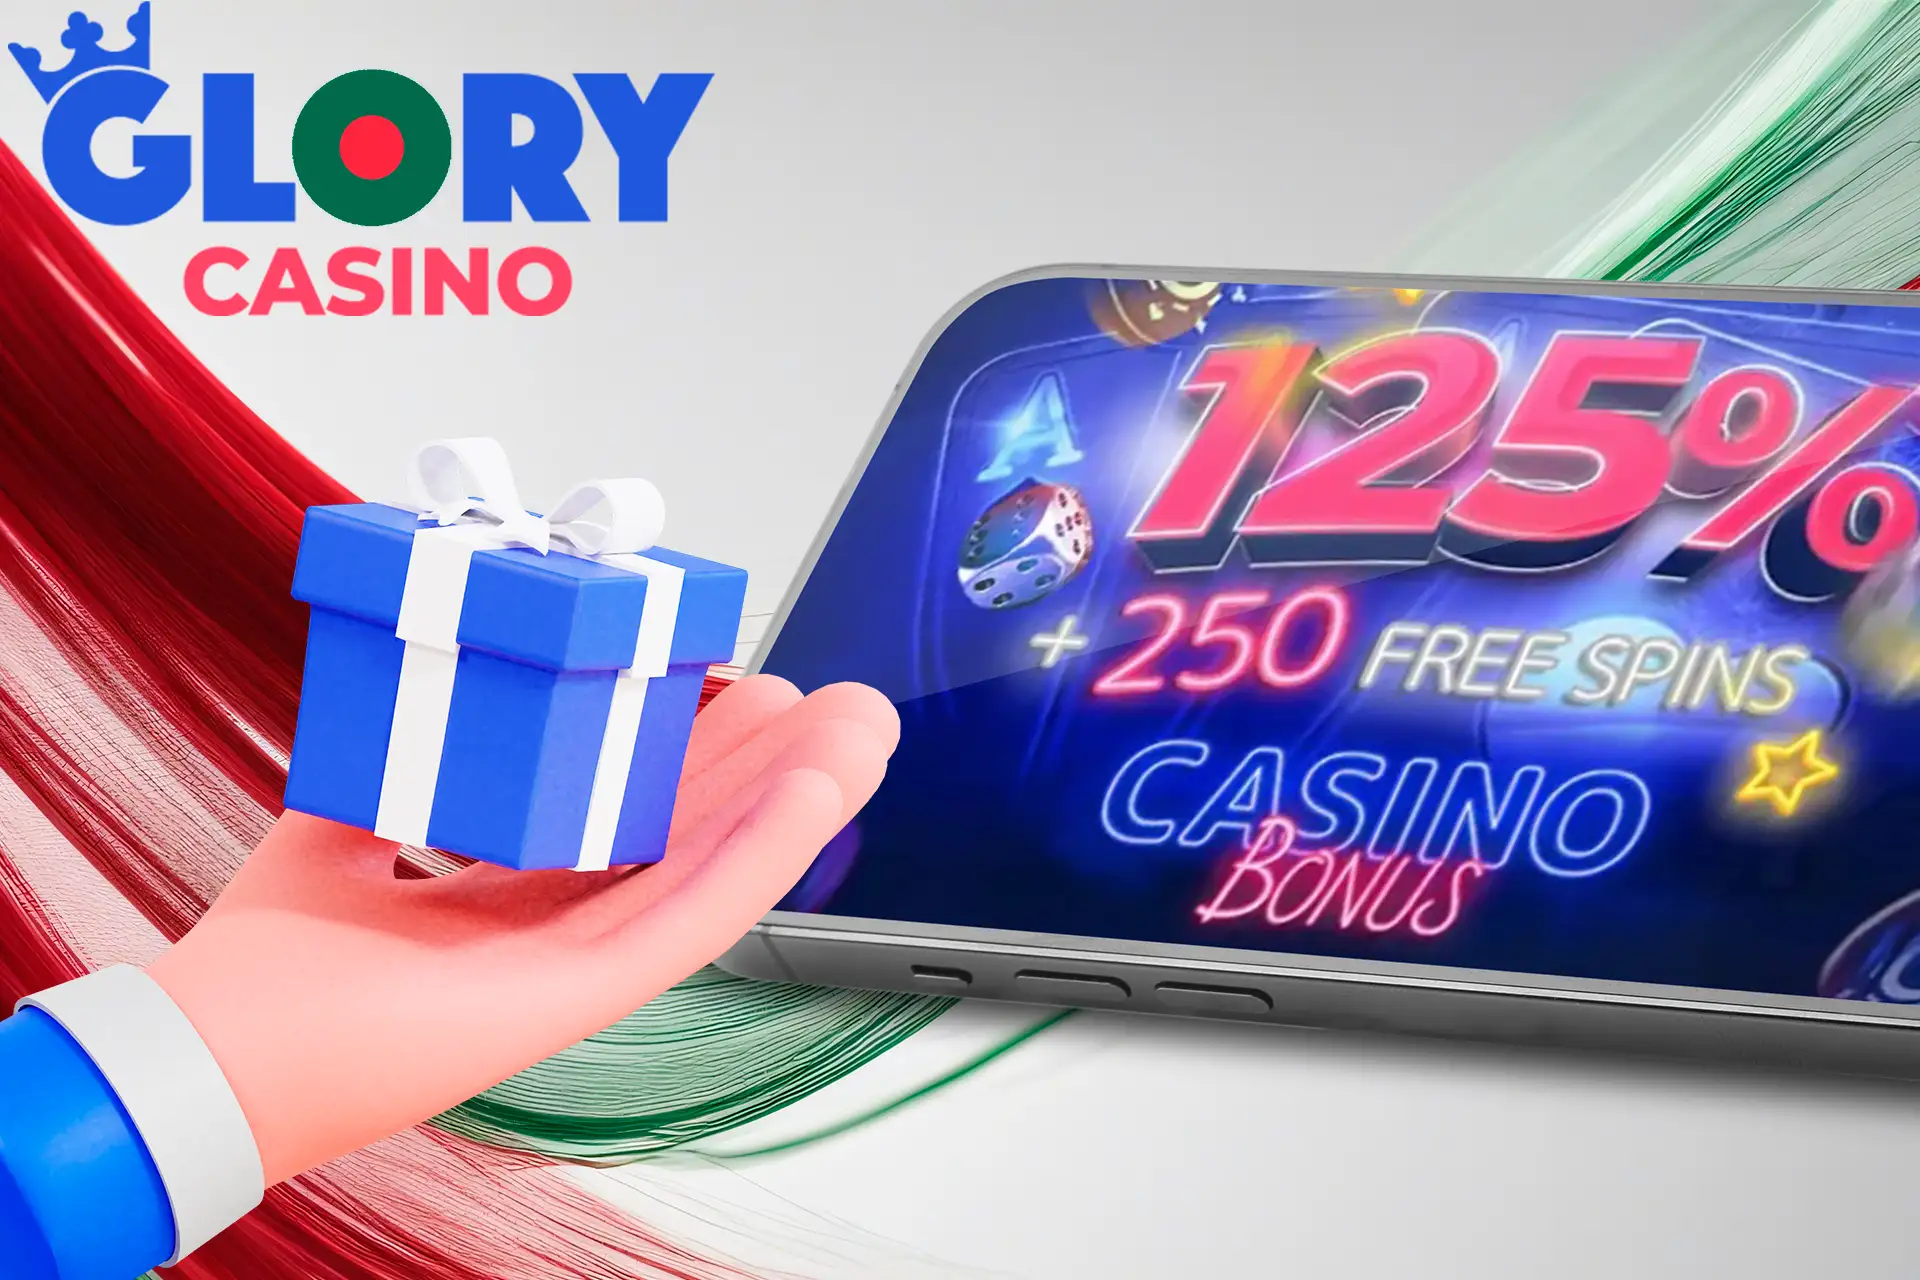 Main welcome bonus at Glory Casino Bangladesh